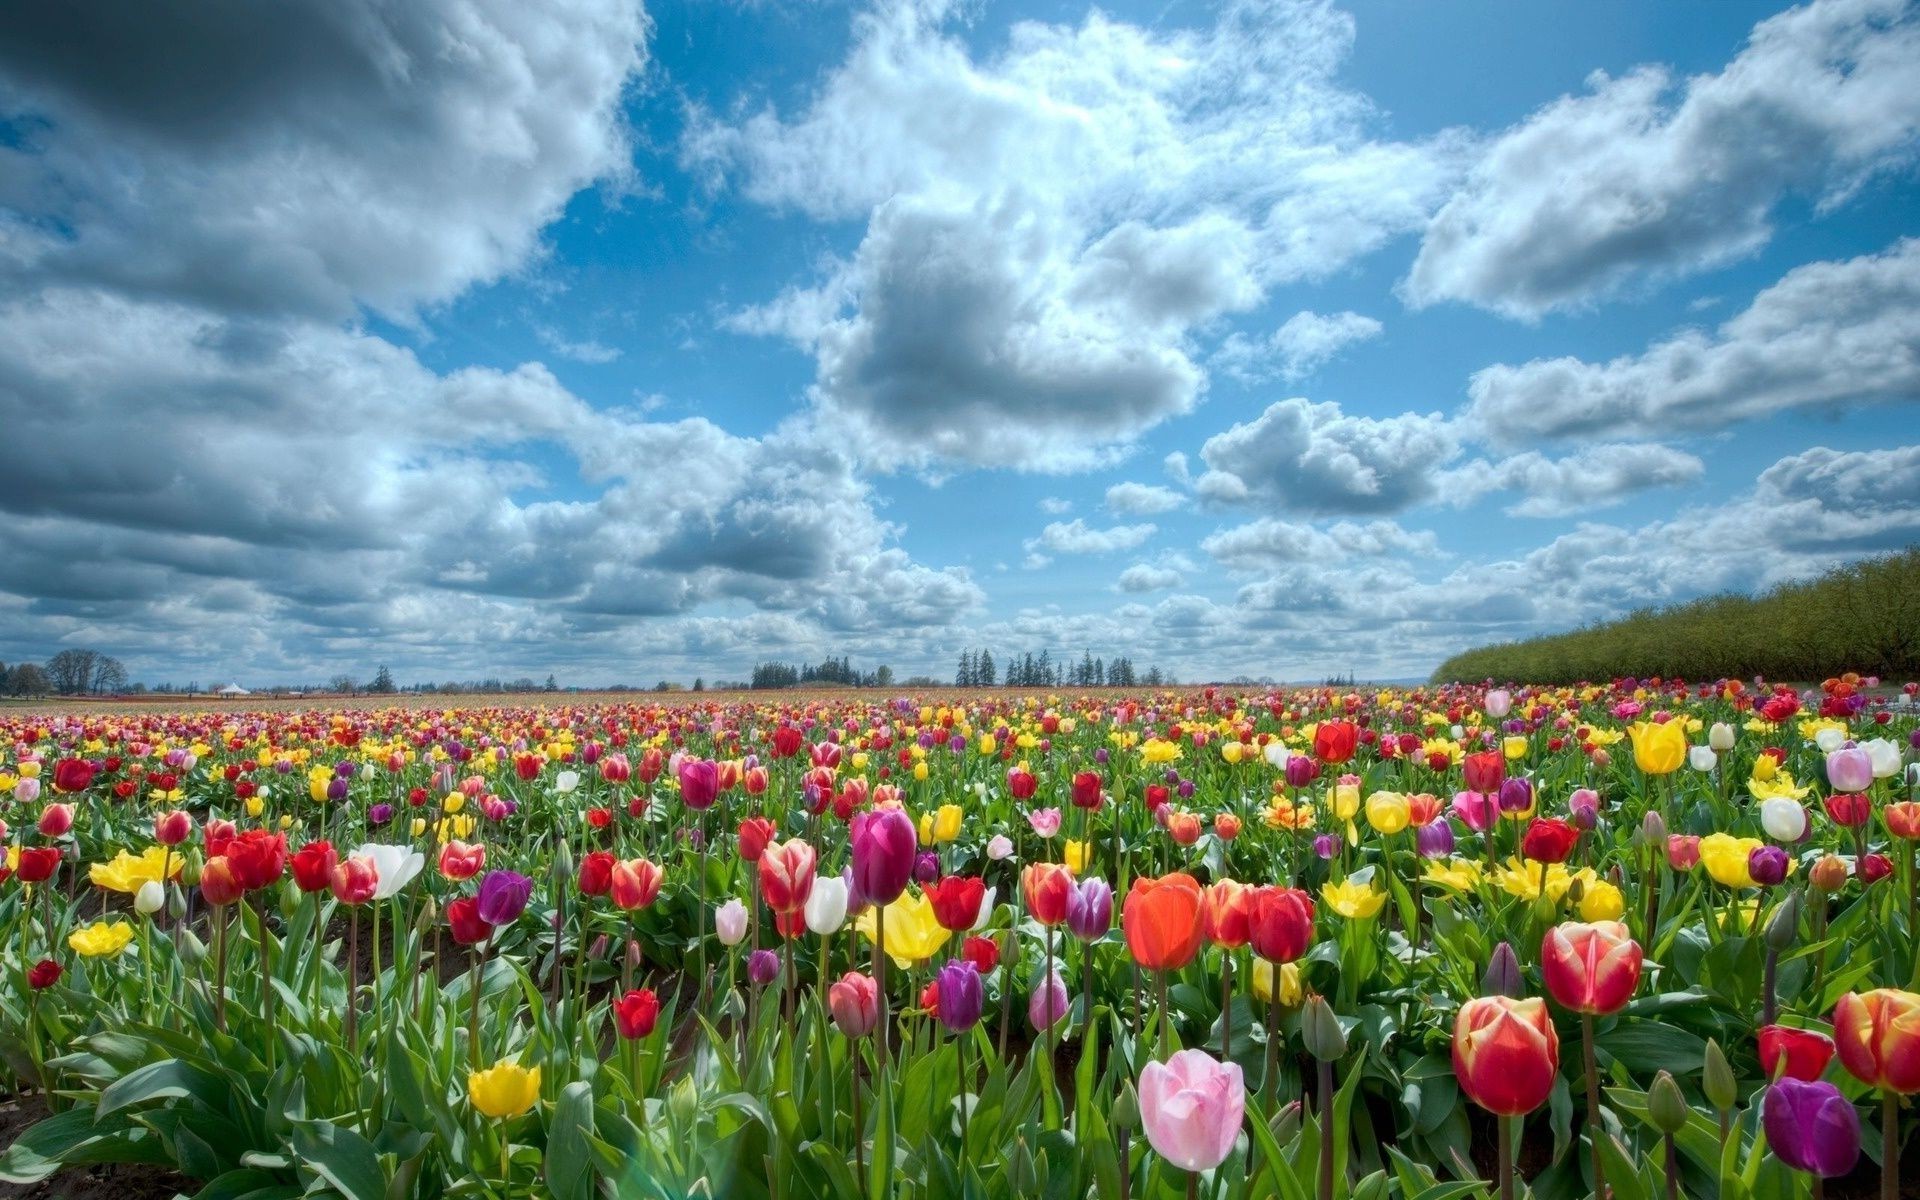 тюльпаны цветок тюльпан поле сад природа флора лето цветочные сельское хозяйство сельских яркий рост лист на открытом воздухе цвет блюминг лепесток сенокос хорошую погоду